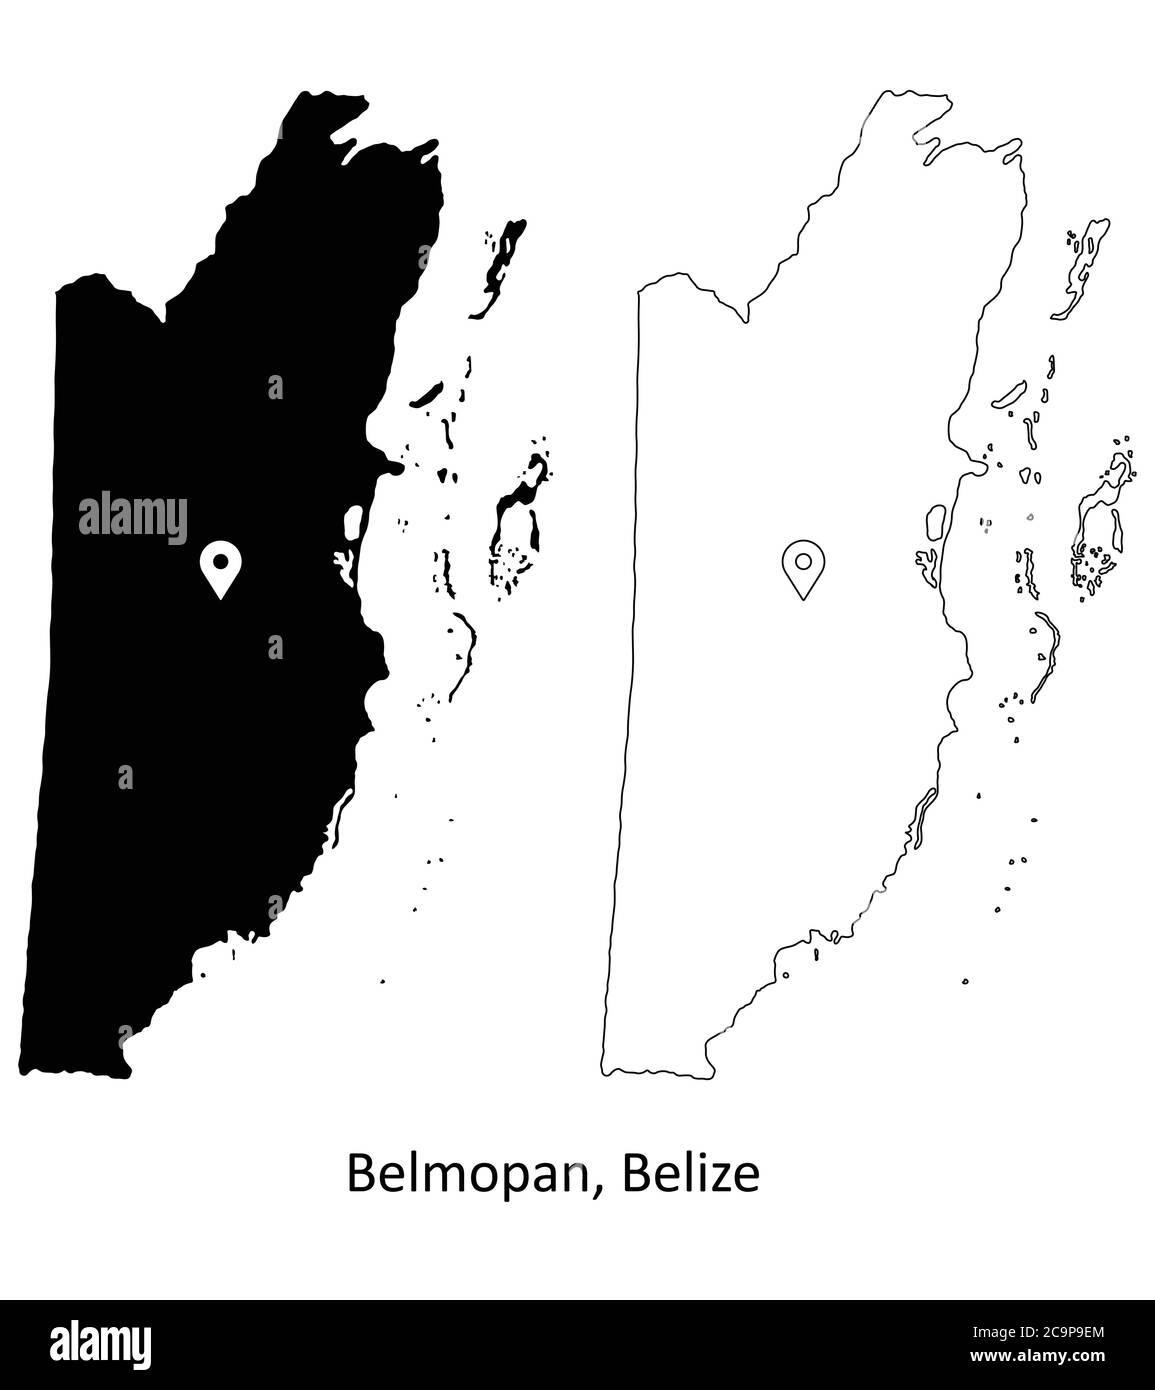 Belmopan Belize. Carte détaillée du pays avec broche d'emplacement sur Capital City. Cartes silhouettes et vectorielles noires isolées sur fond blanc. Vecteur EPS Illustration de Vecteur